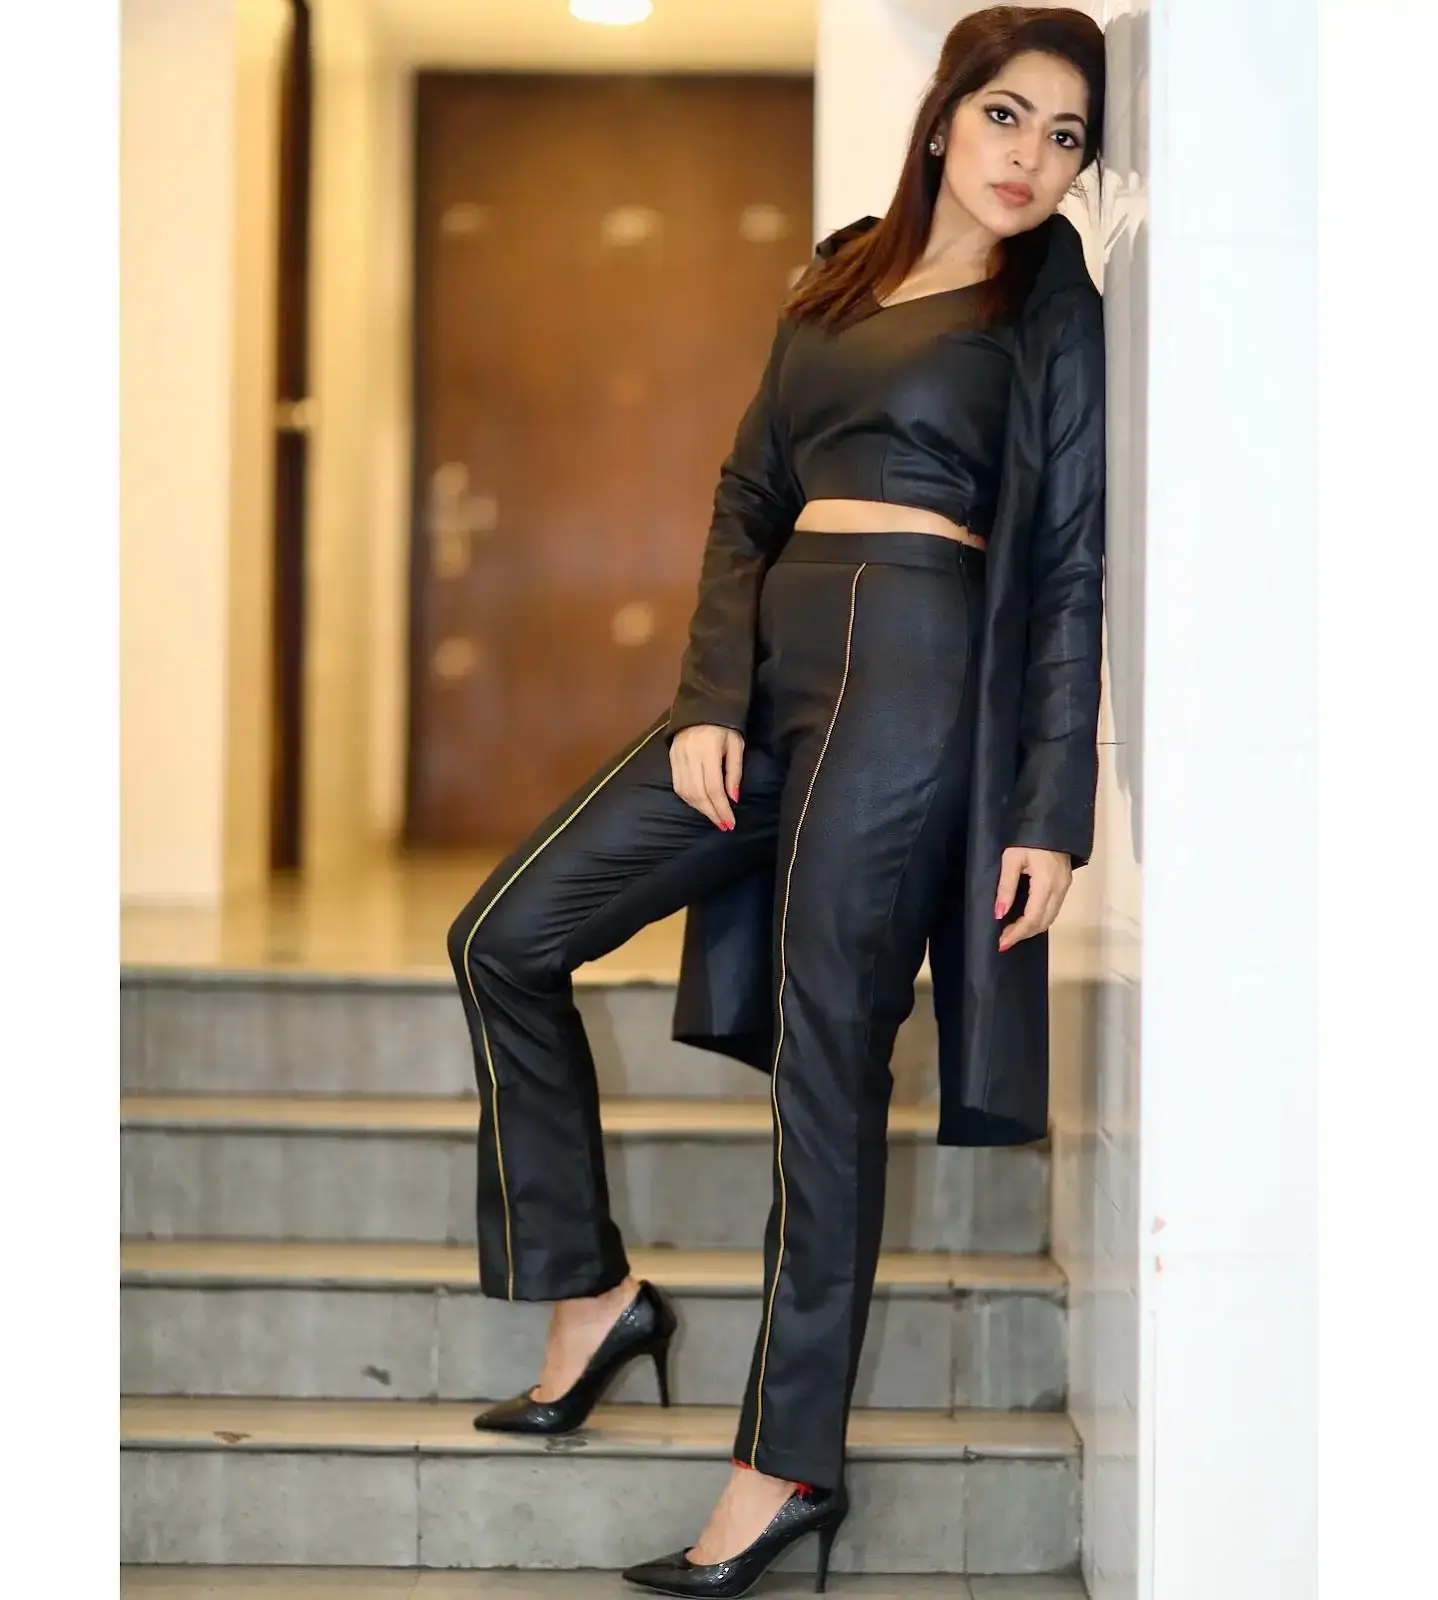 SOUTH INDIAN TV ACTRESS RAMYA SUBRAMANIAN IN BLACK DRESS 16